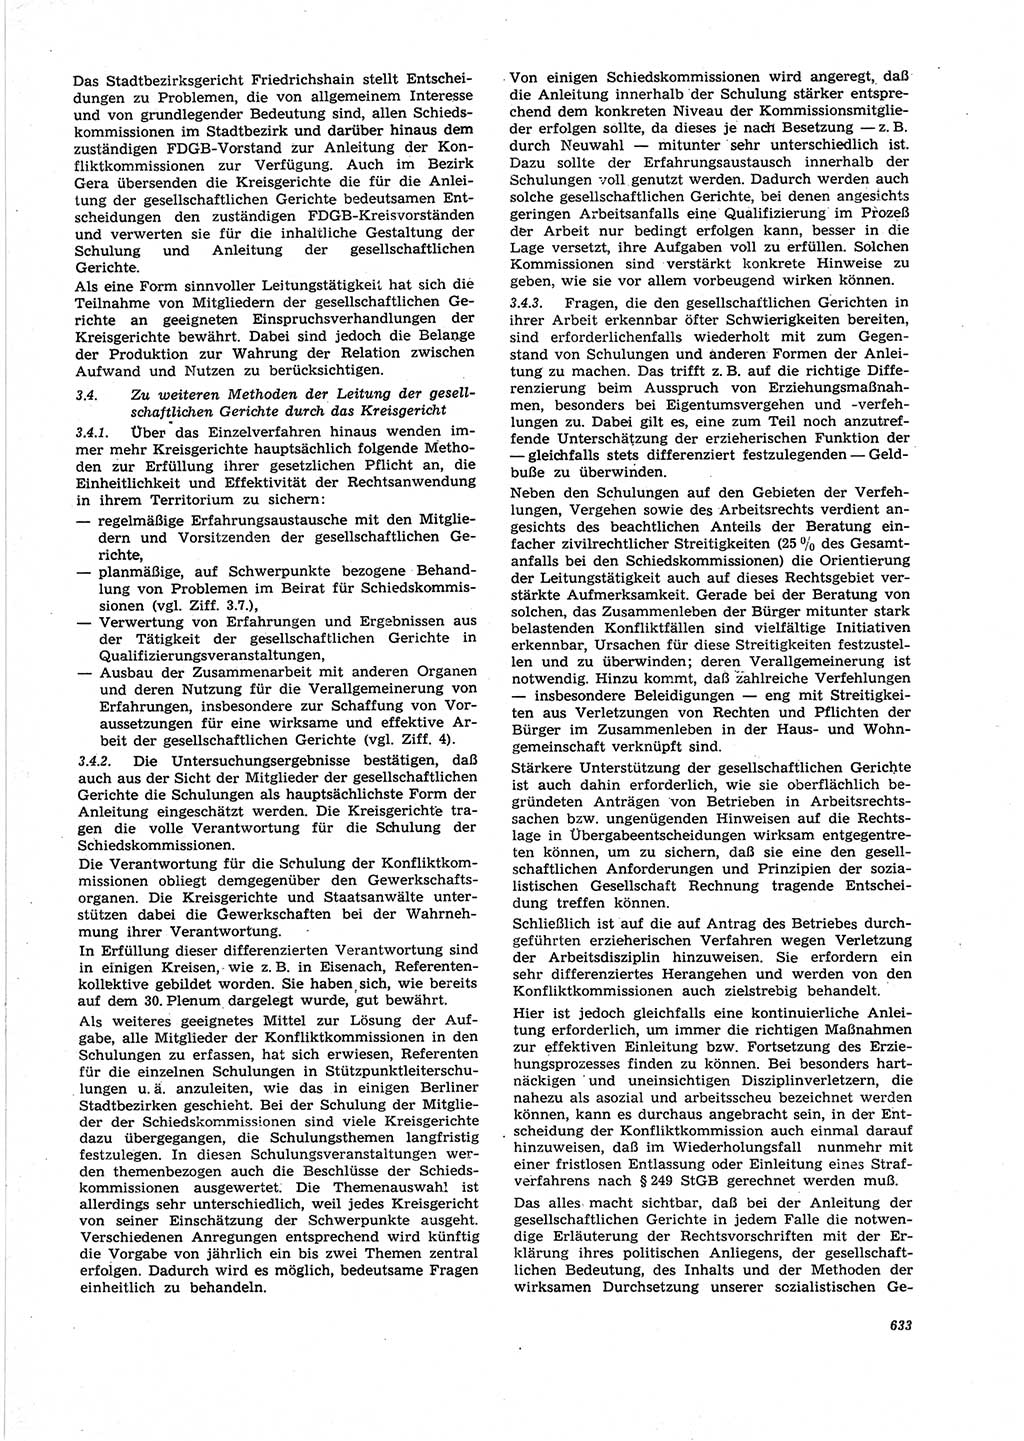 Neue Justiz (NJ), Zeitschrift für Recht und Rechtswissenschaft [Deutsche Demokratische Republik (DDR)], 25. Jahrgang 1971, Seite 633 (NJ DDR 1971, S. 633)